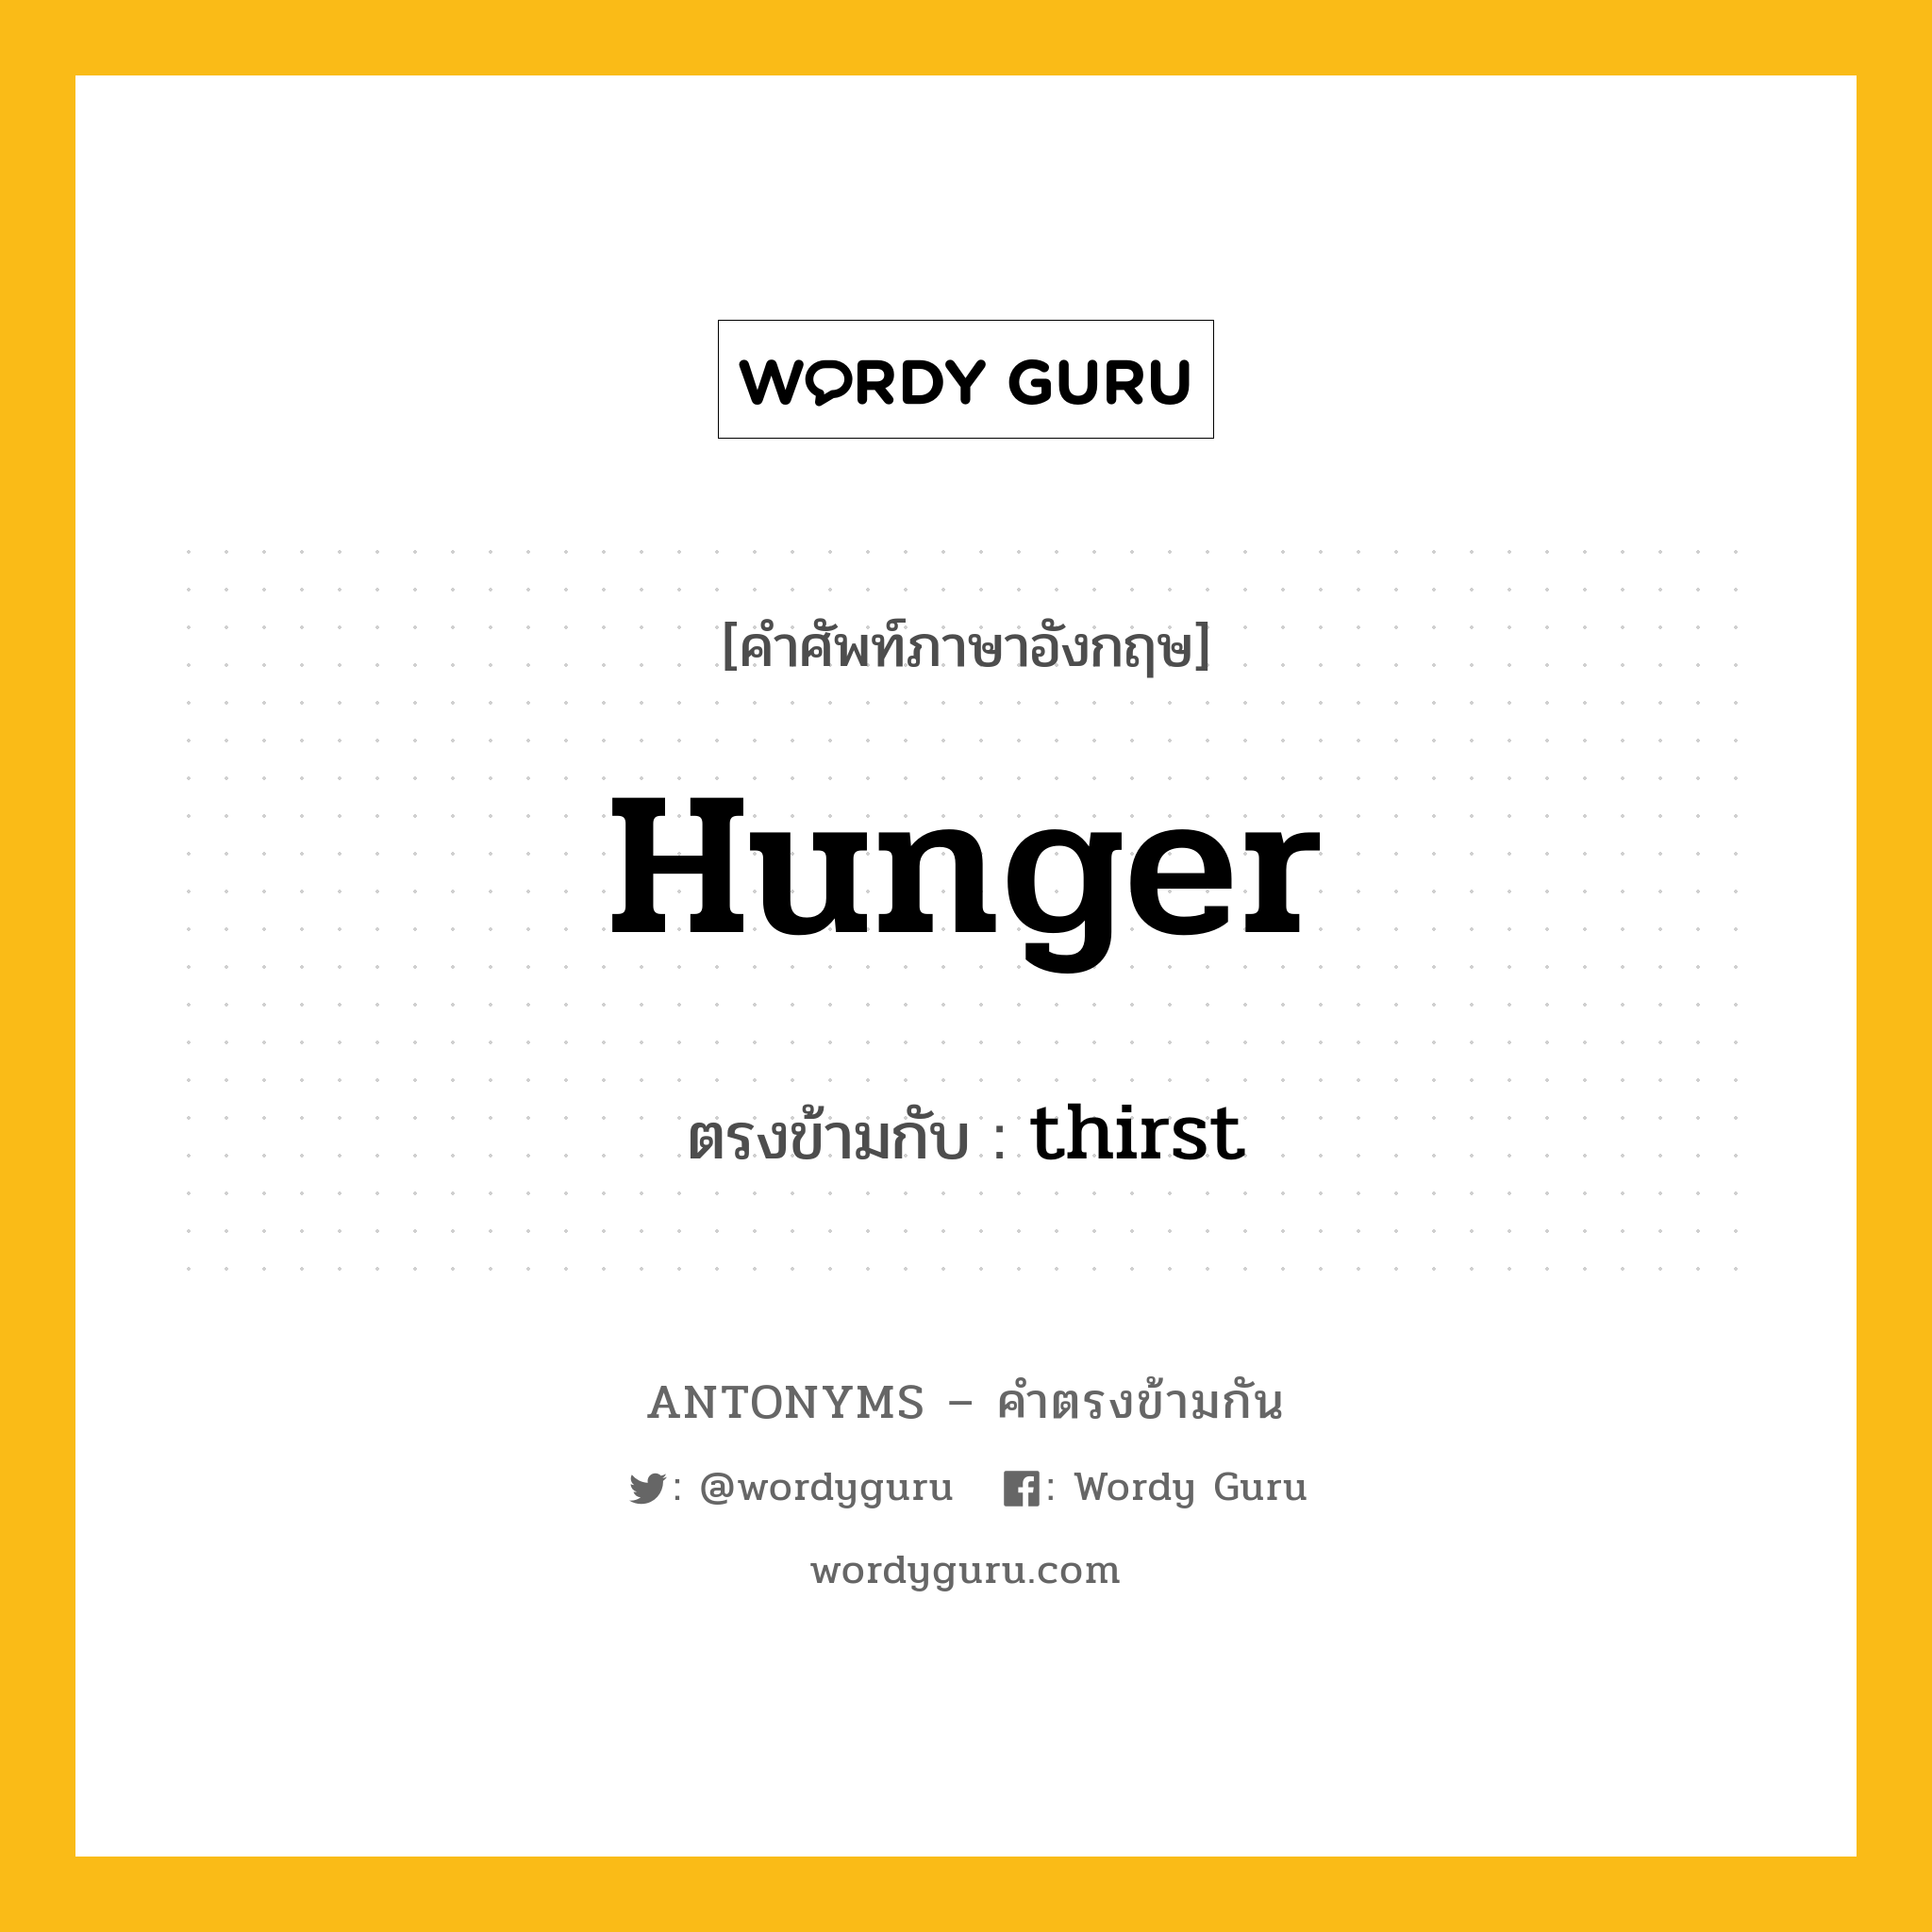 hunger เป็นคำตรงข้ามกับคำไหนบ้าง?, คำศัพท์ภาษาอังกฤษ hunger ตรงข้ามกับ thirst หมวด thirst